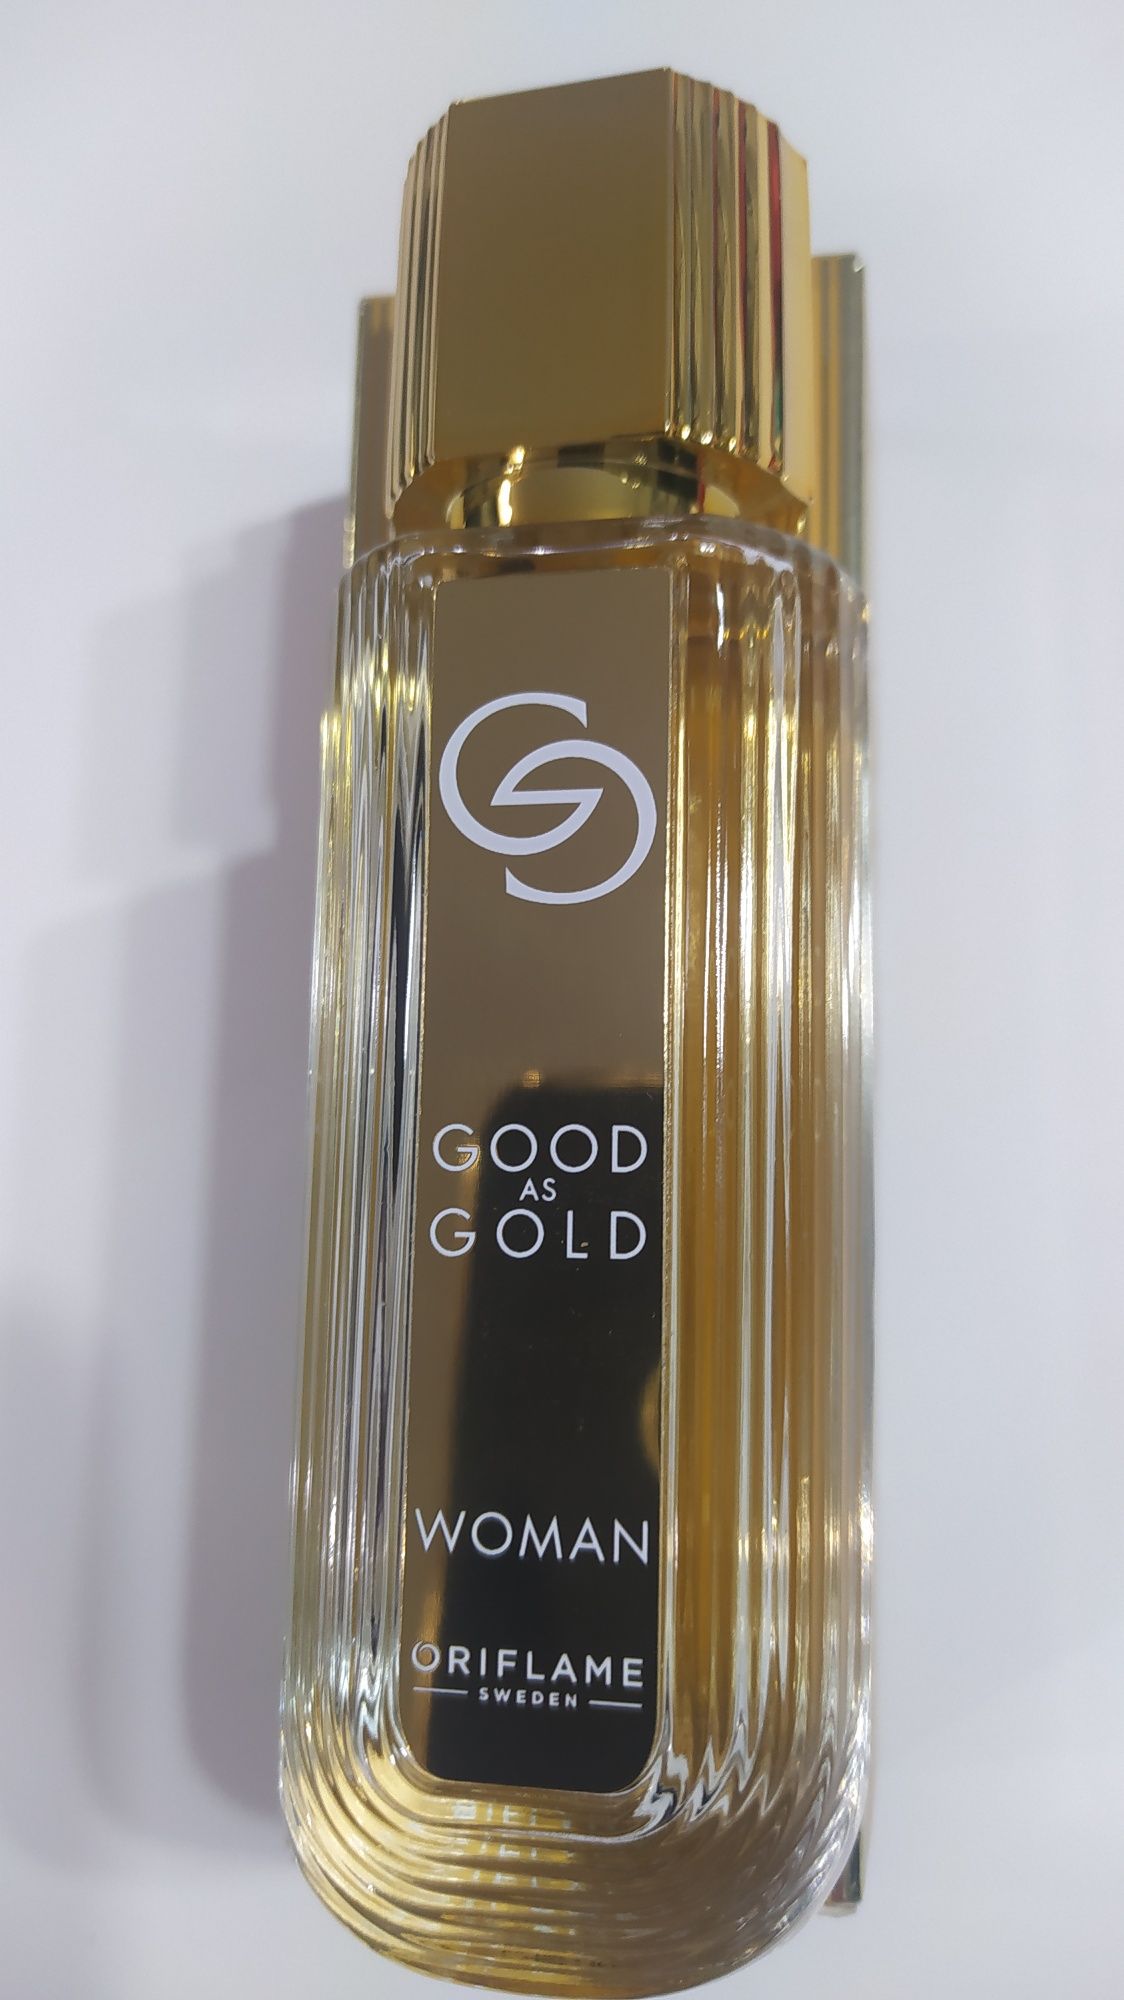 Woda perfumowana Giordani Gold Good as Gold dla niej